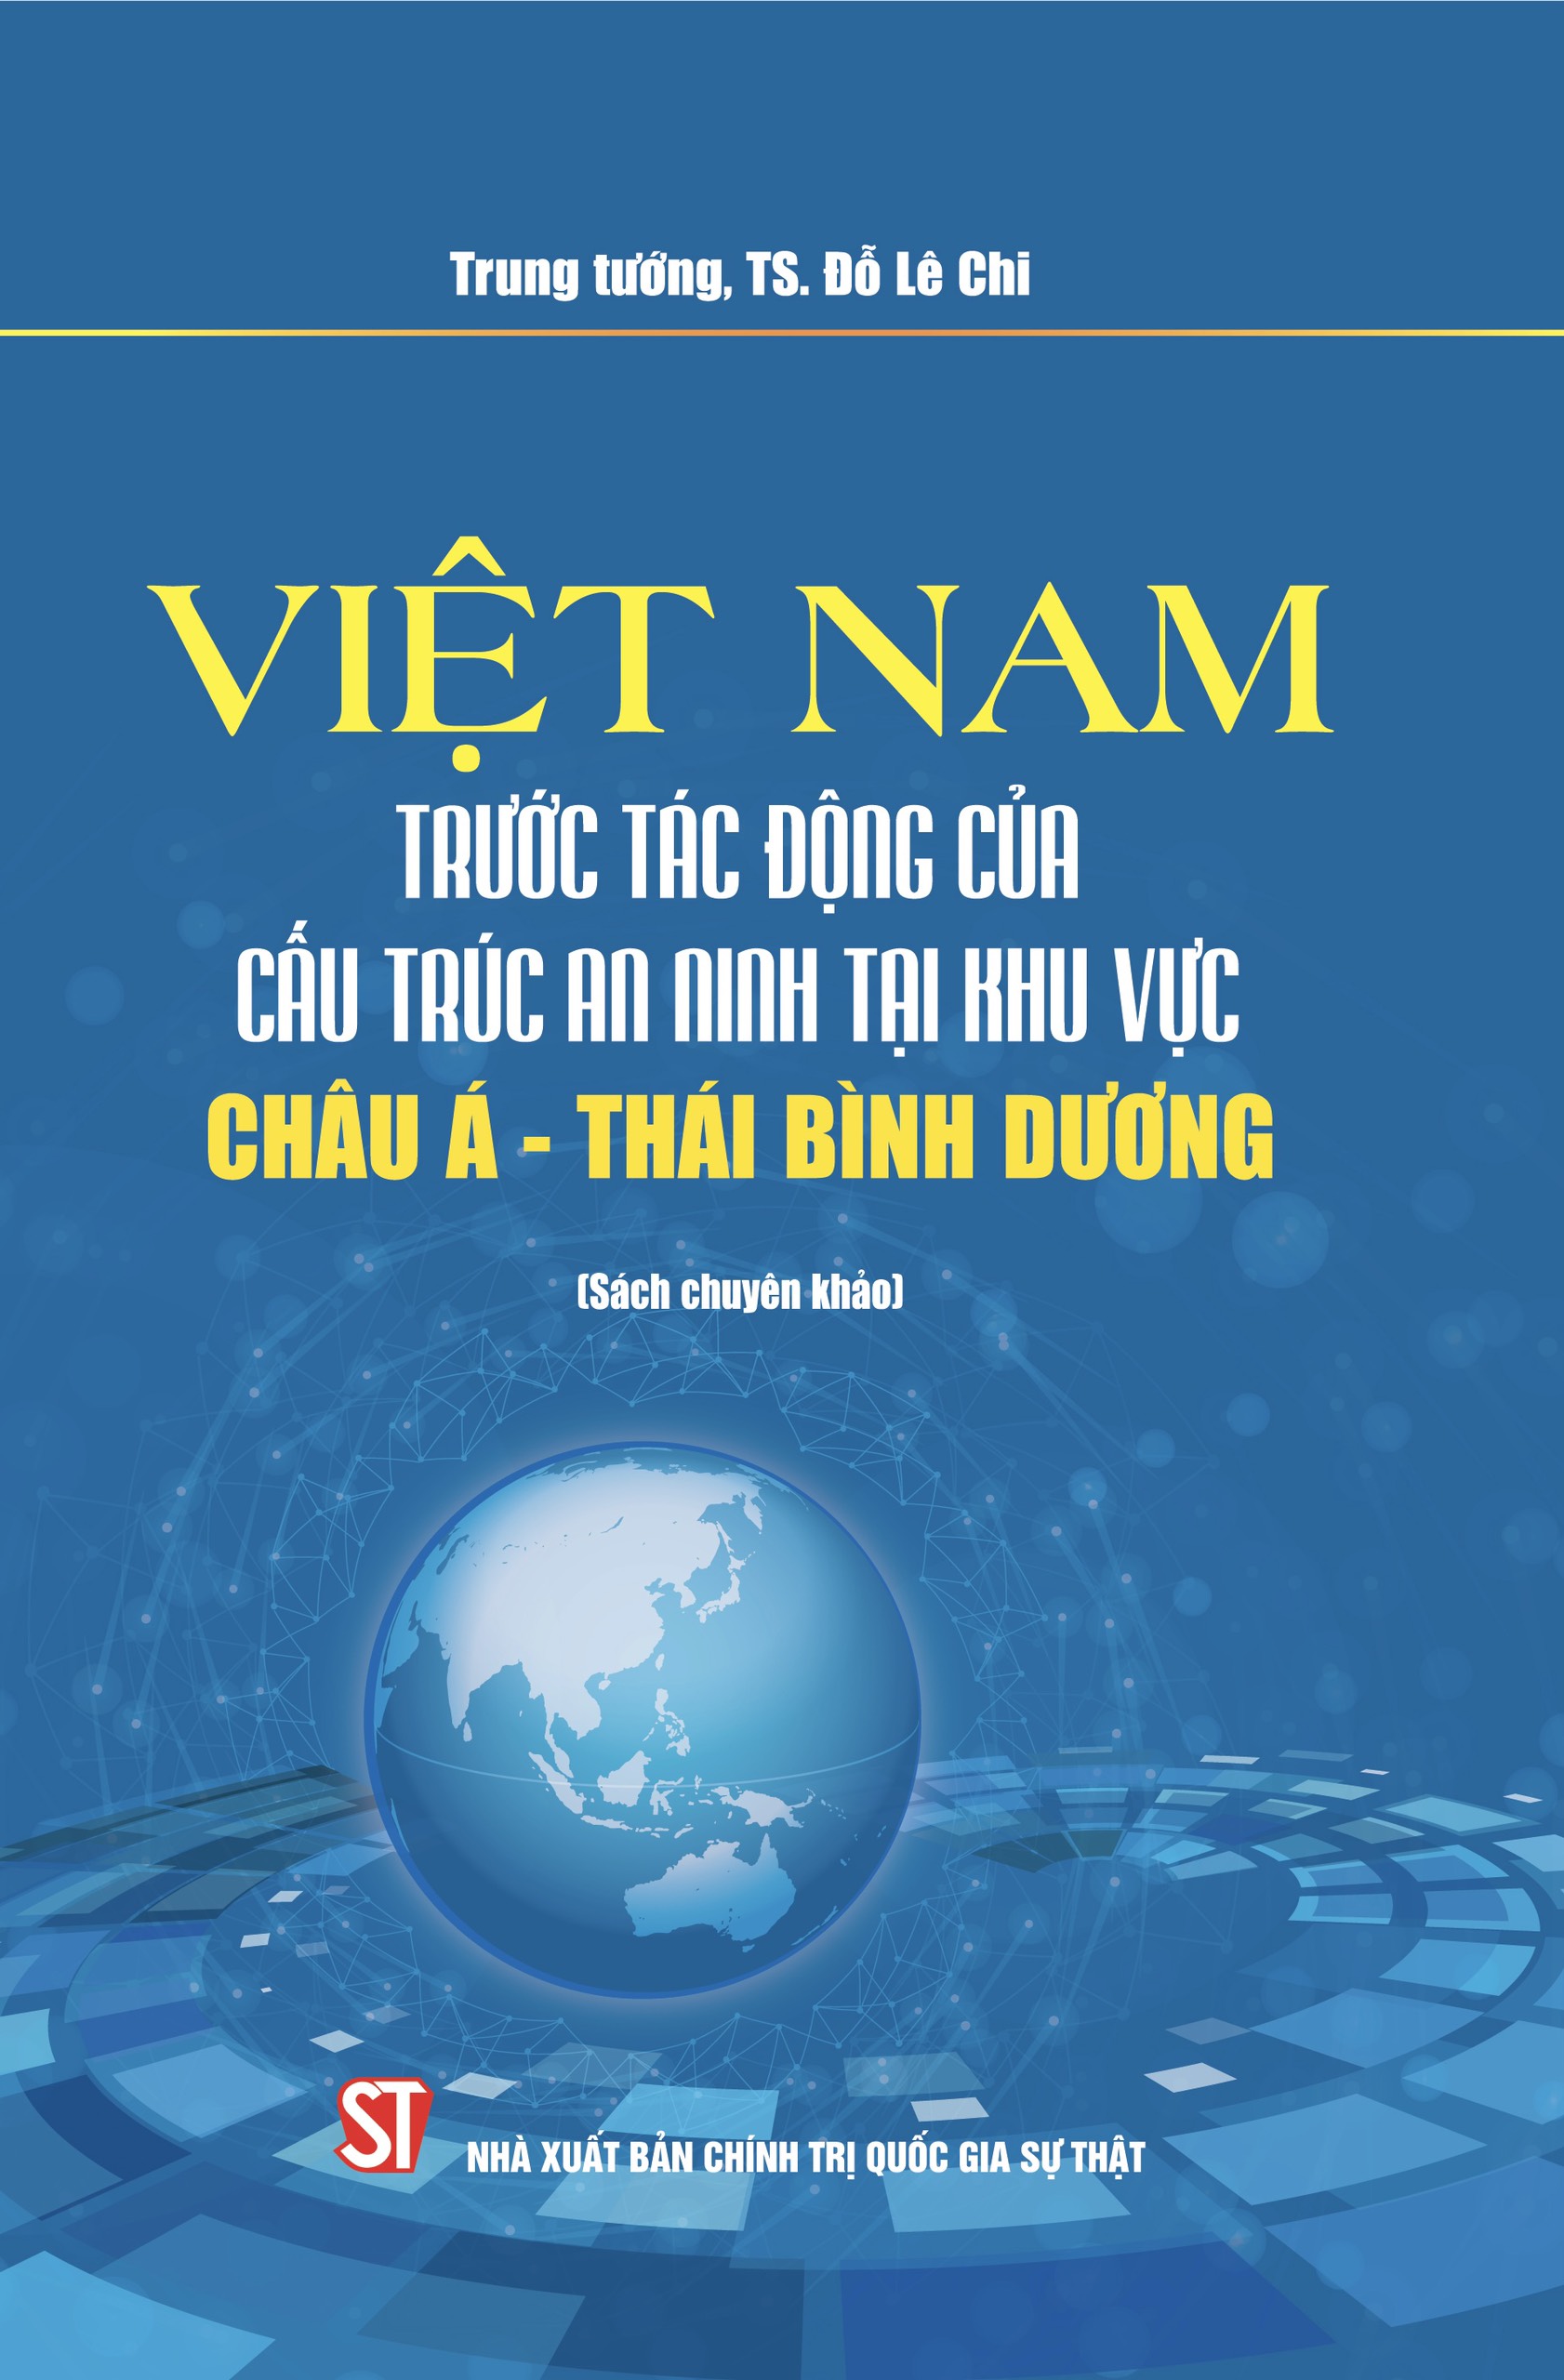 Việt Nam trước tác động của cấu trúc an ninh mạng tại khu vực châu Á - Thái Bình Dương (Sách chuyên khảo) (Xuất bản lần thứ ba)